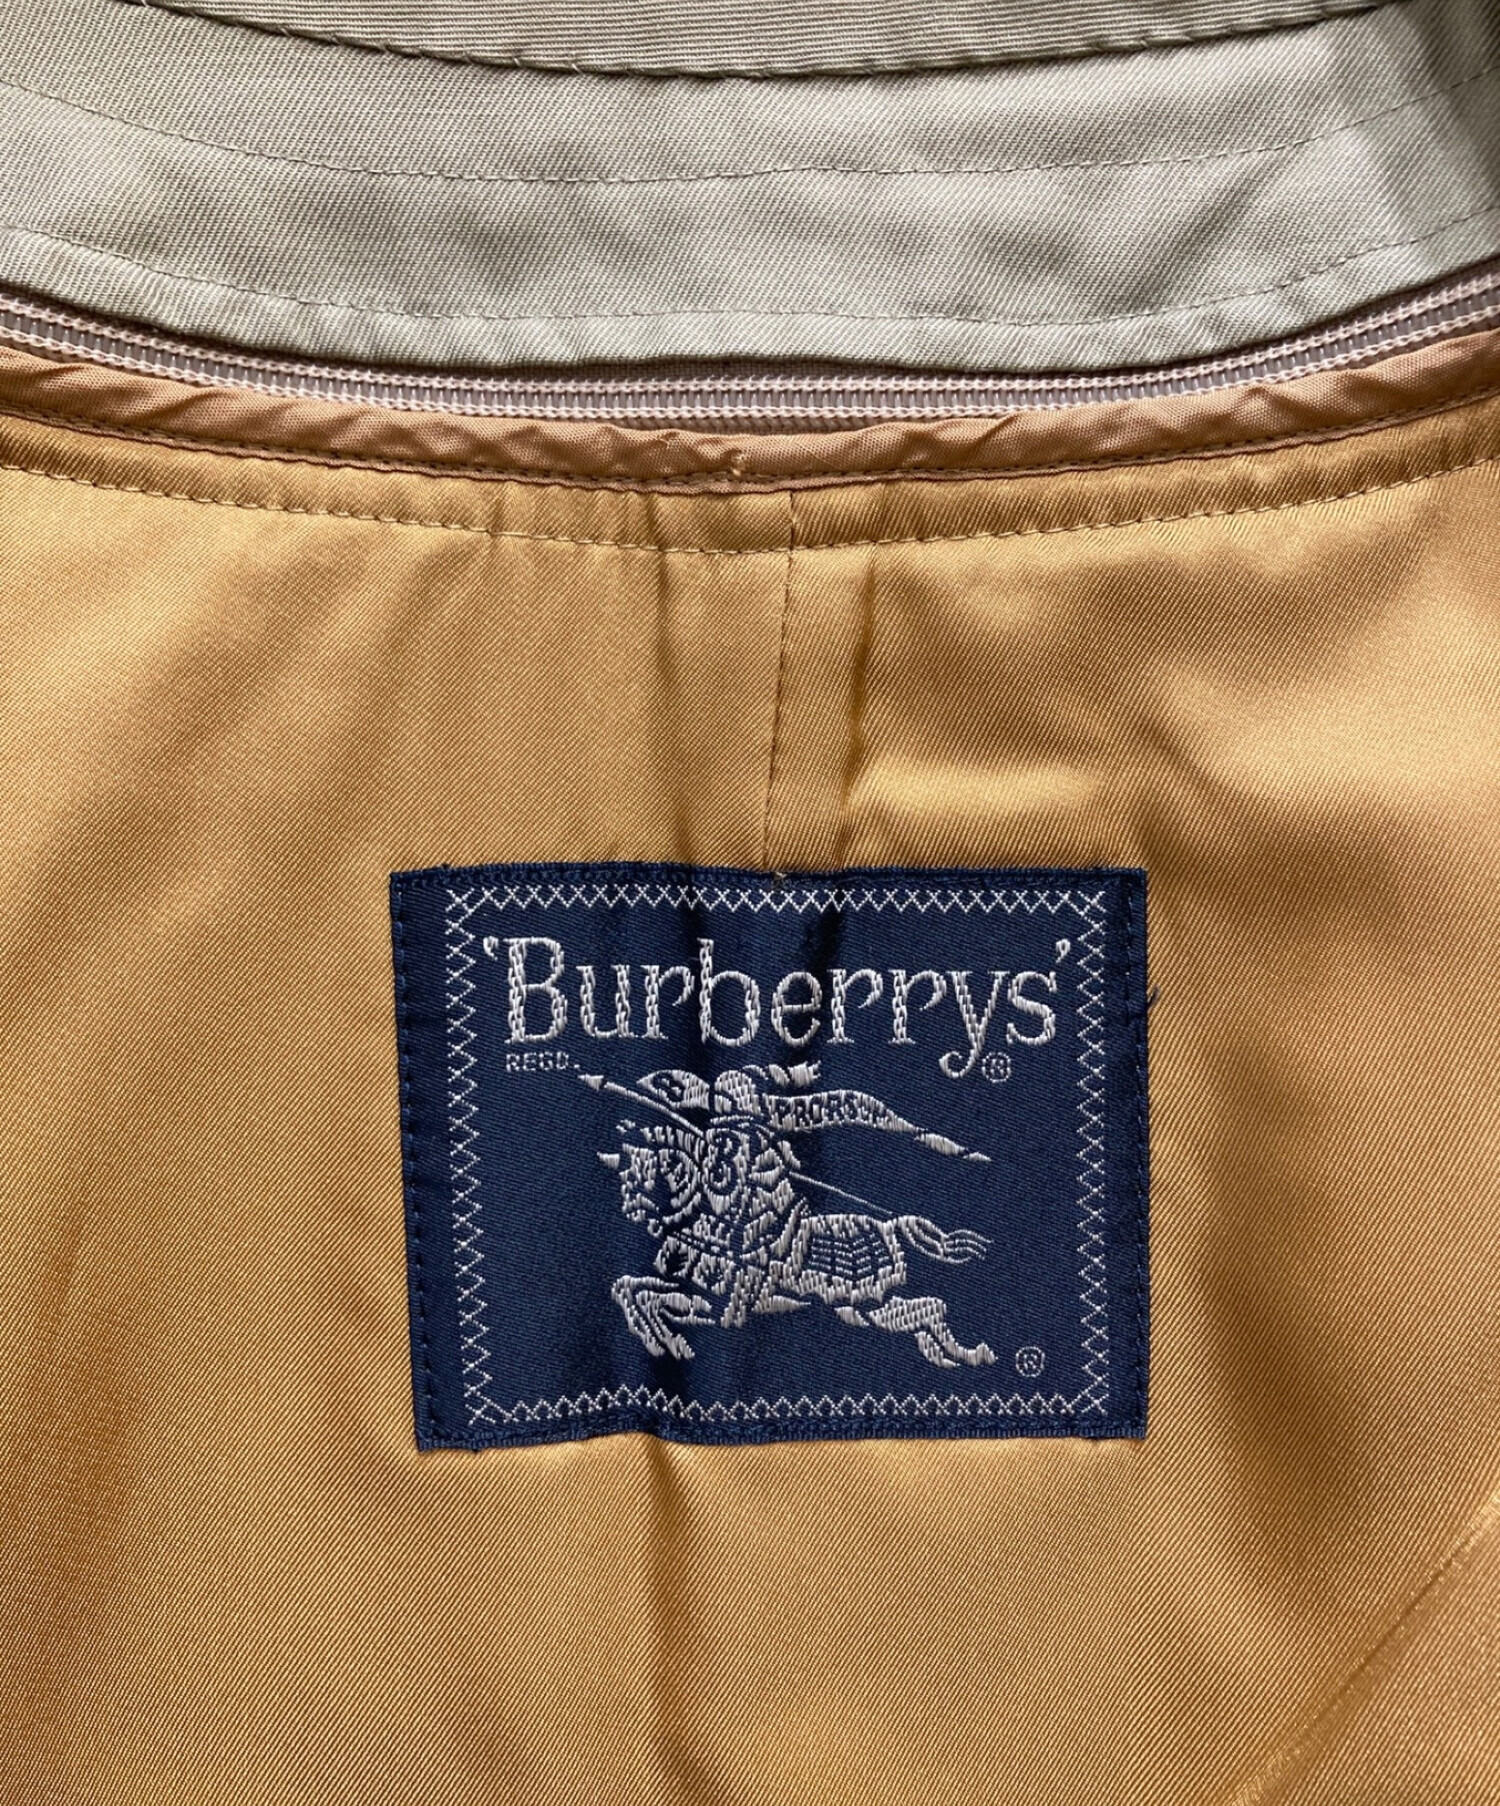 Burberry's (バーバリーズ) ノバチェックライナー付ステンカラーコート カーキ サイズ:表記無し(実寸サイズをご参照下さい)